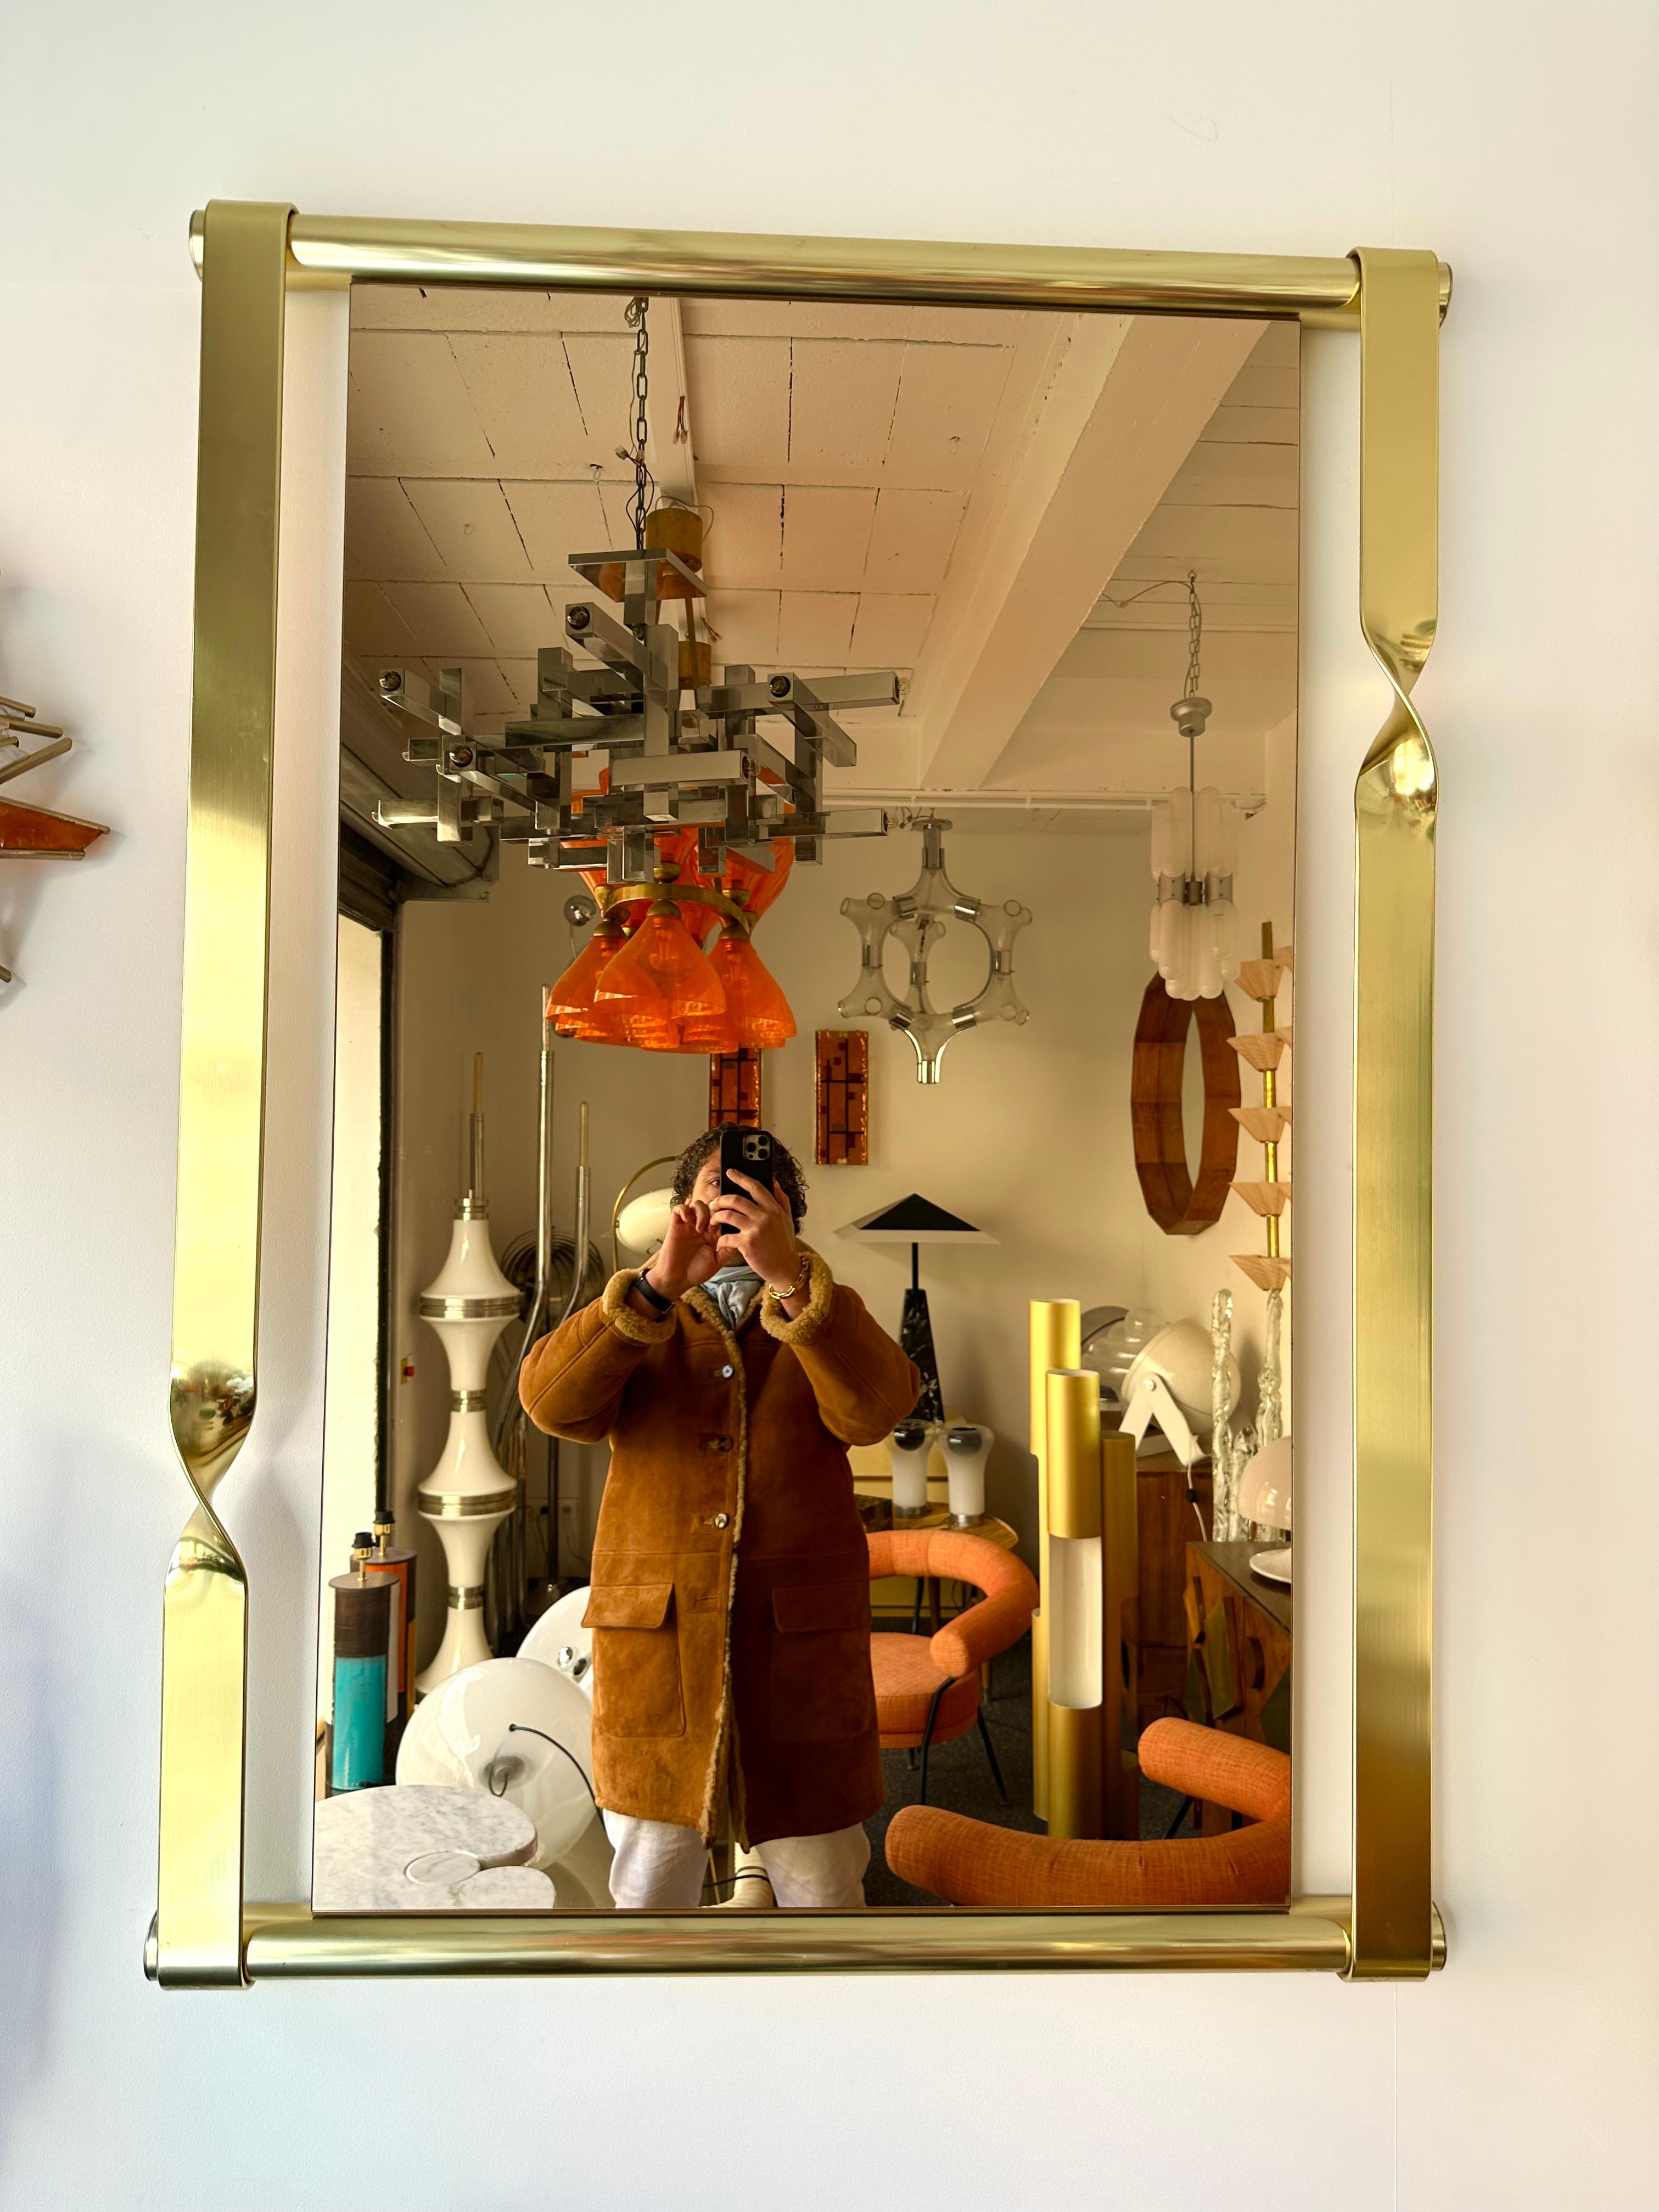 Grand miroir mural en laiton de Luciano Frigerio. Joli verre en cuivre rose. Horizontal ou vertical. Des designers célèbres comme Romeo Rega, Tommaso Barbi, Sandro Petti pour la Maison Jansen, Mario Sabot.